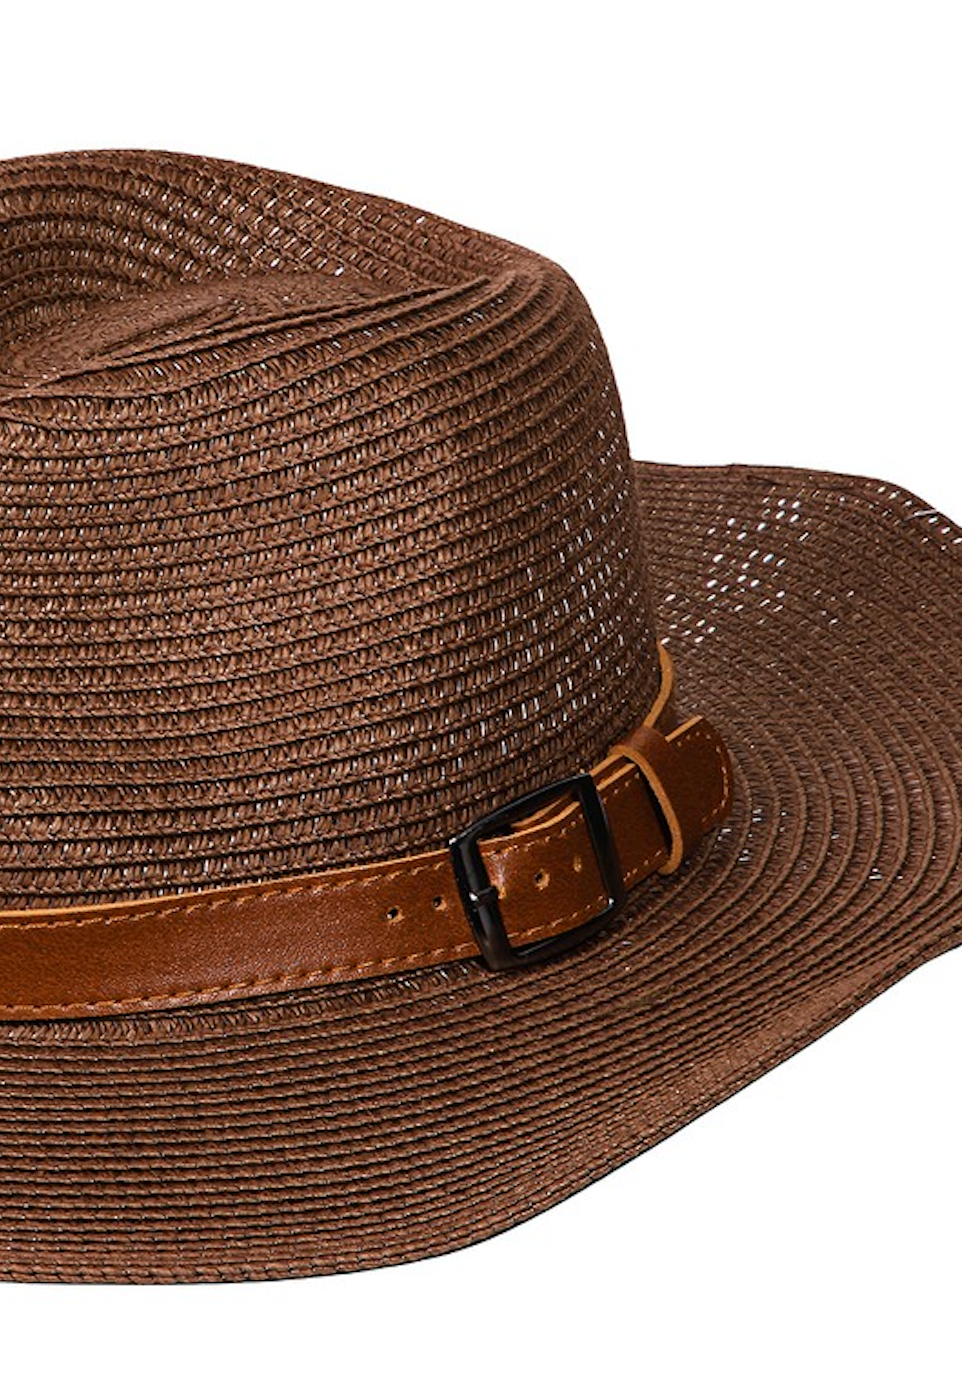 Straw Texture Belt Strap Fashion Hat